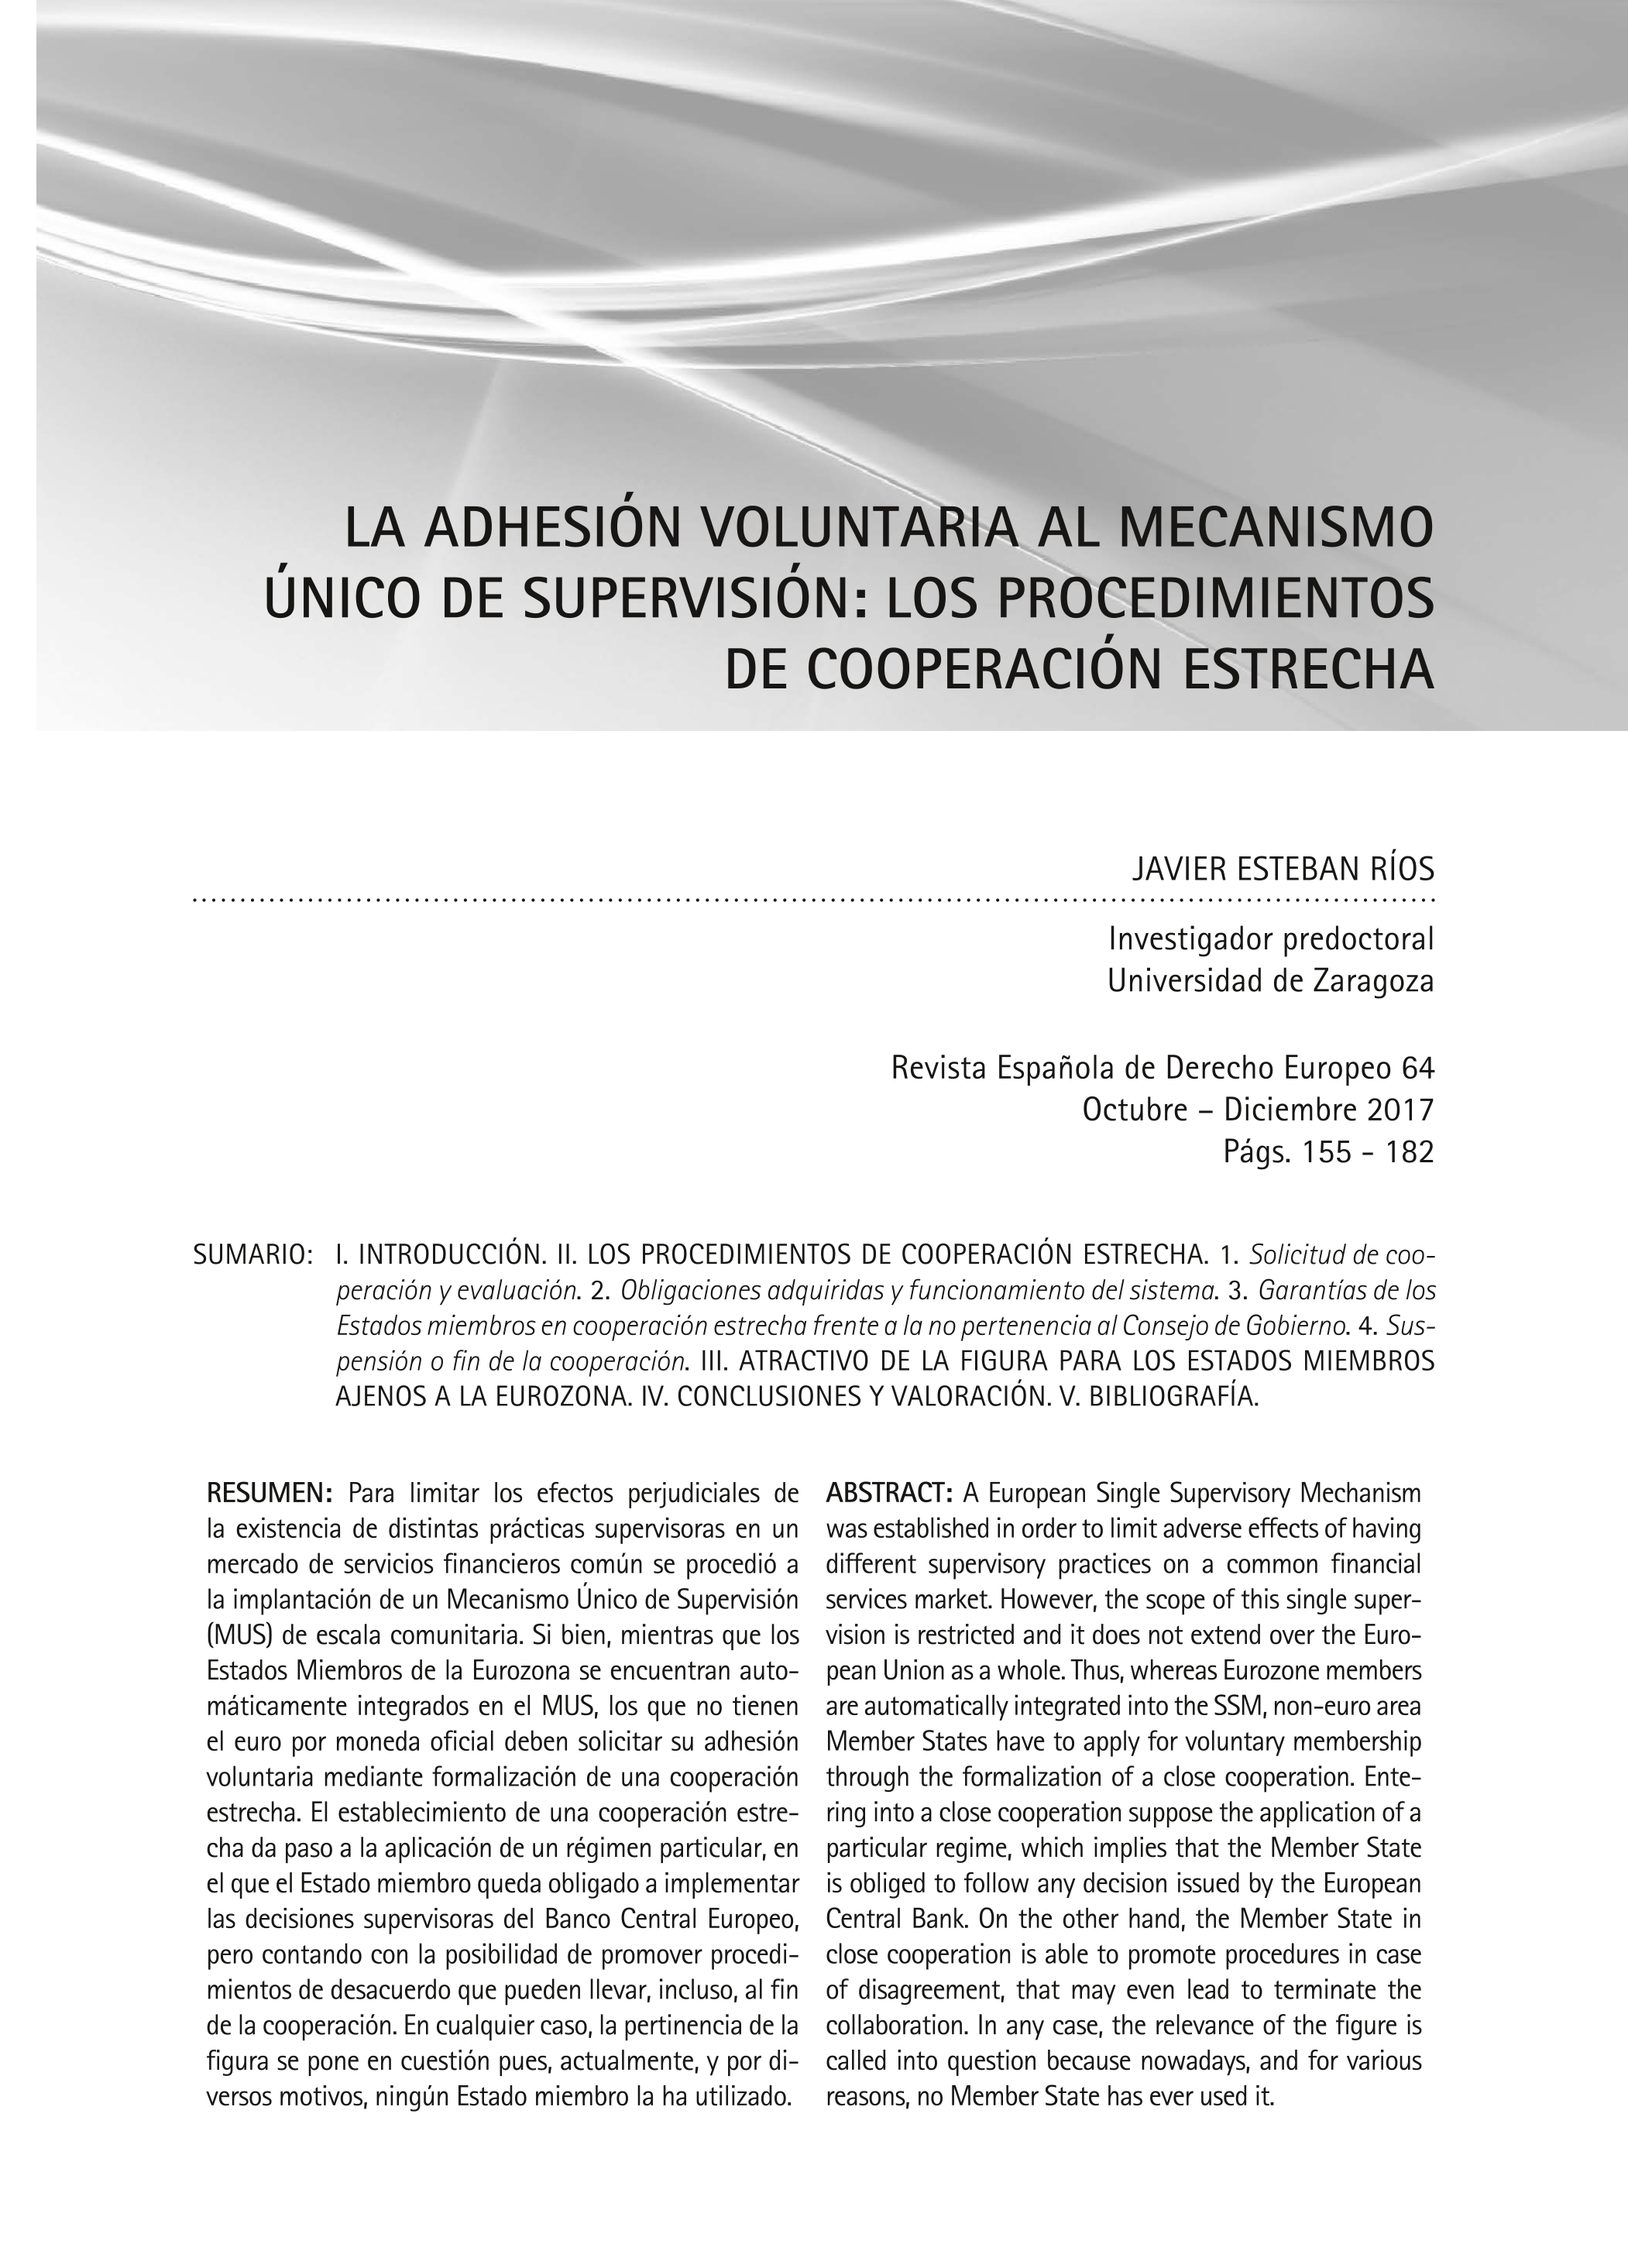 La adhesión voluntaria al Mecanismo Único de Supervisión: los procedimientos de cooperación estrecha